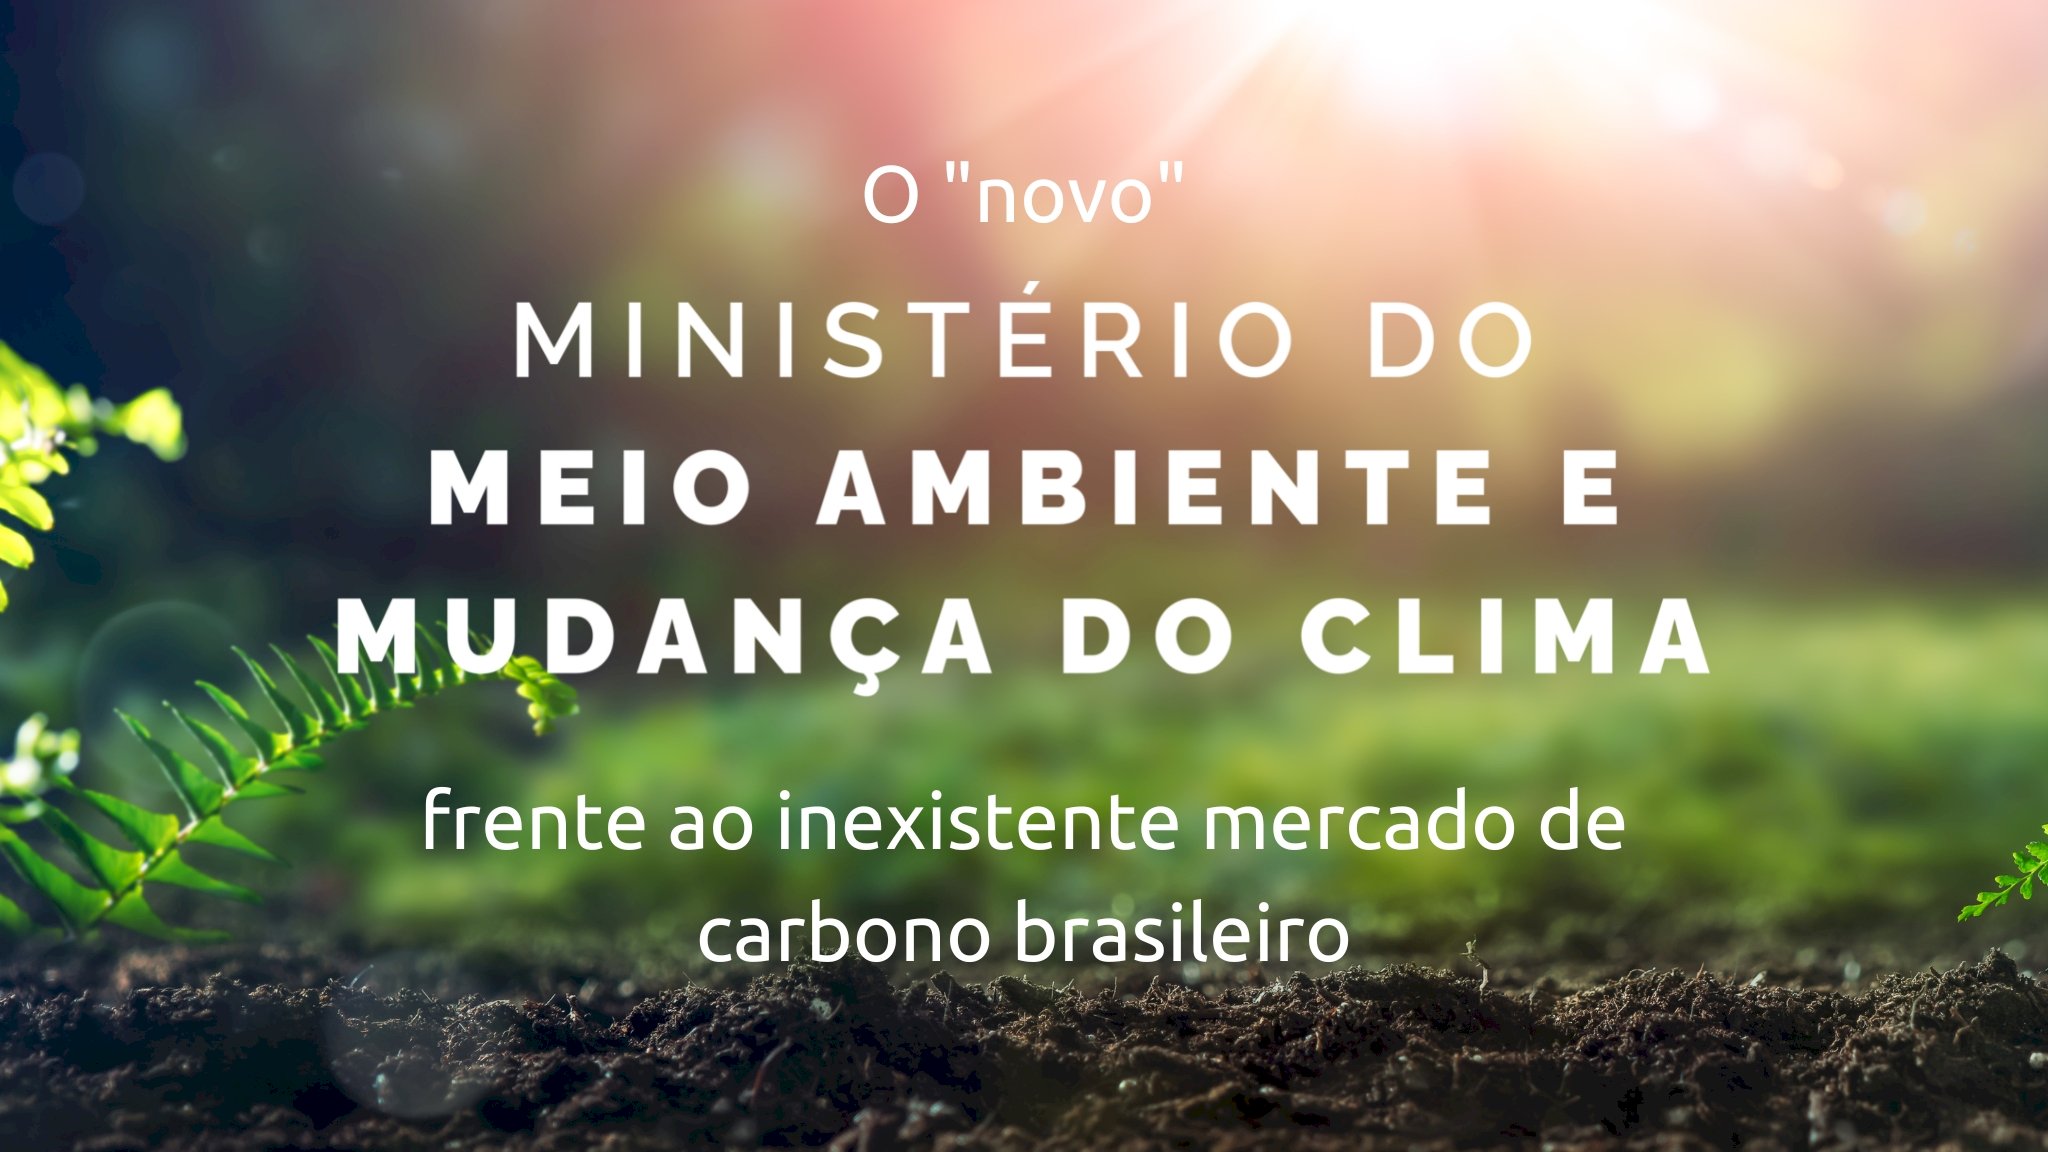 O “novo” Ministério do Meio Ambiente e Mudança do Clima frente ao inexistente mercado de carbono brasileiro